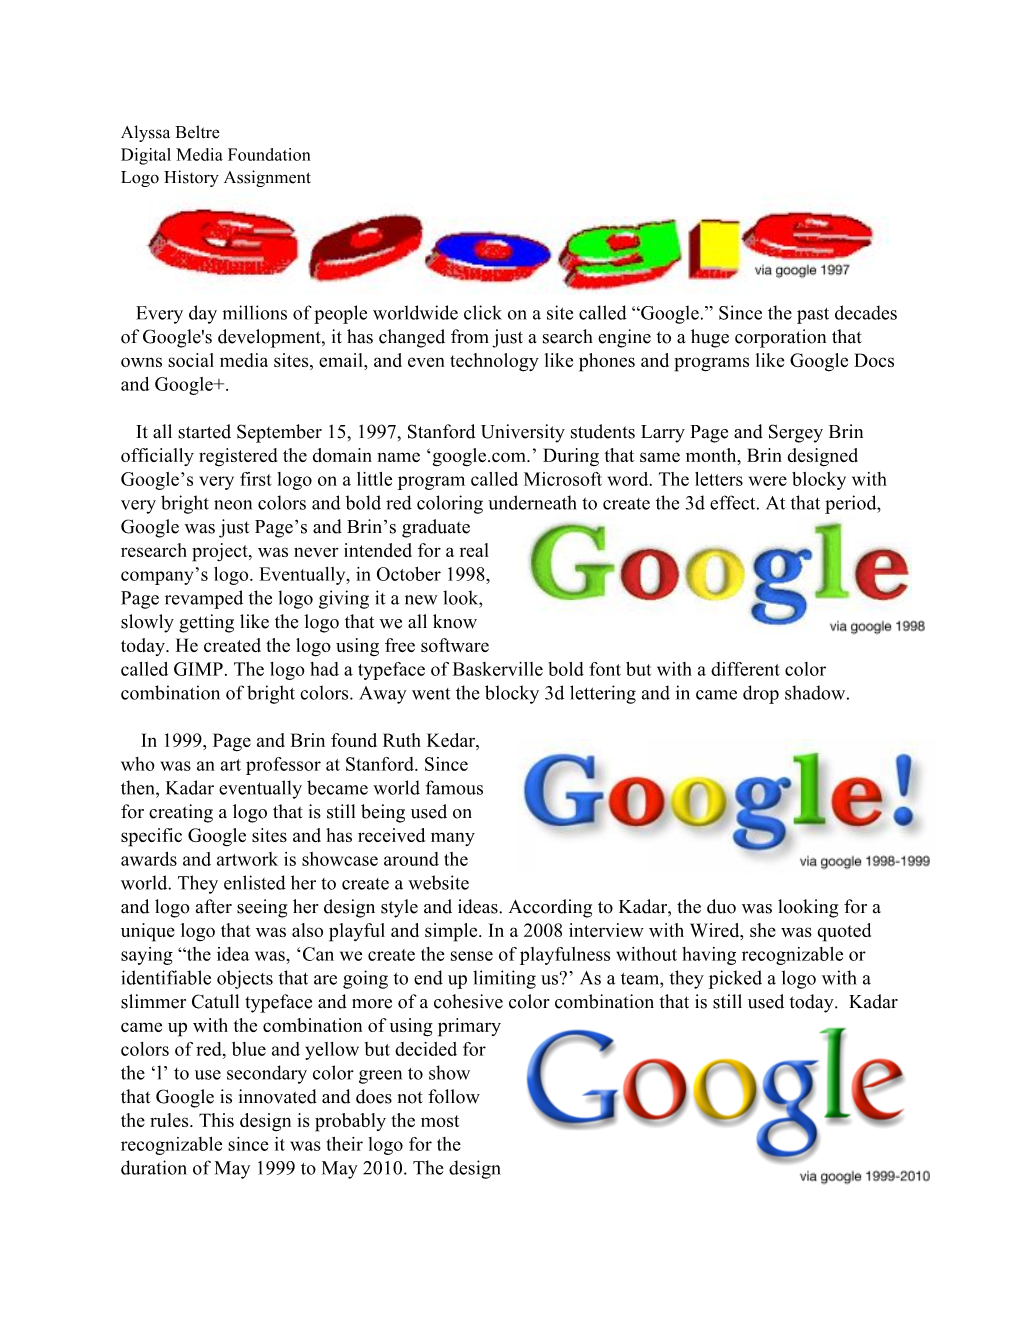 Google's Logo History